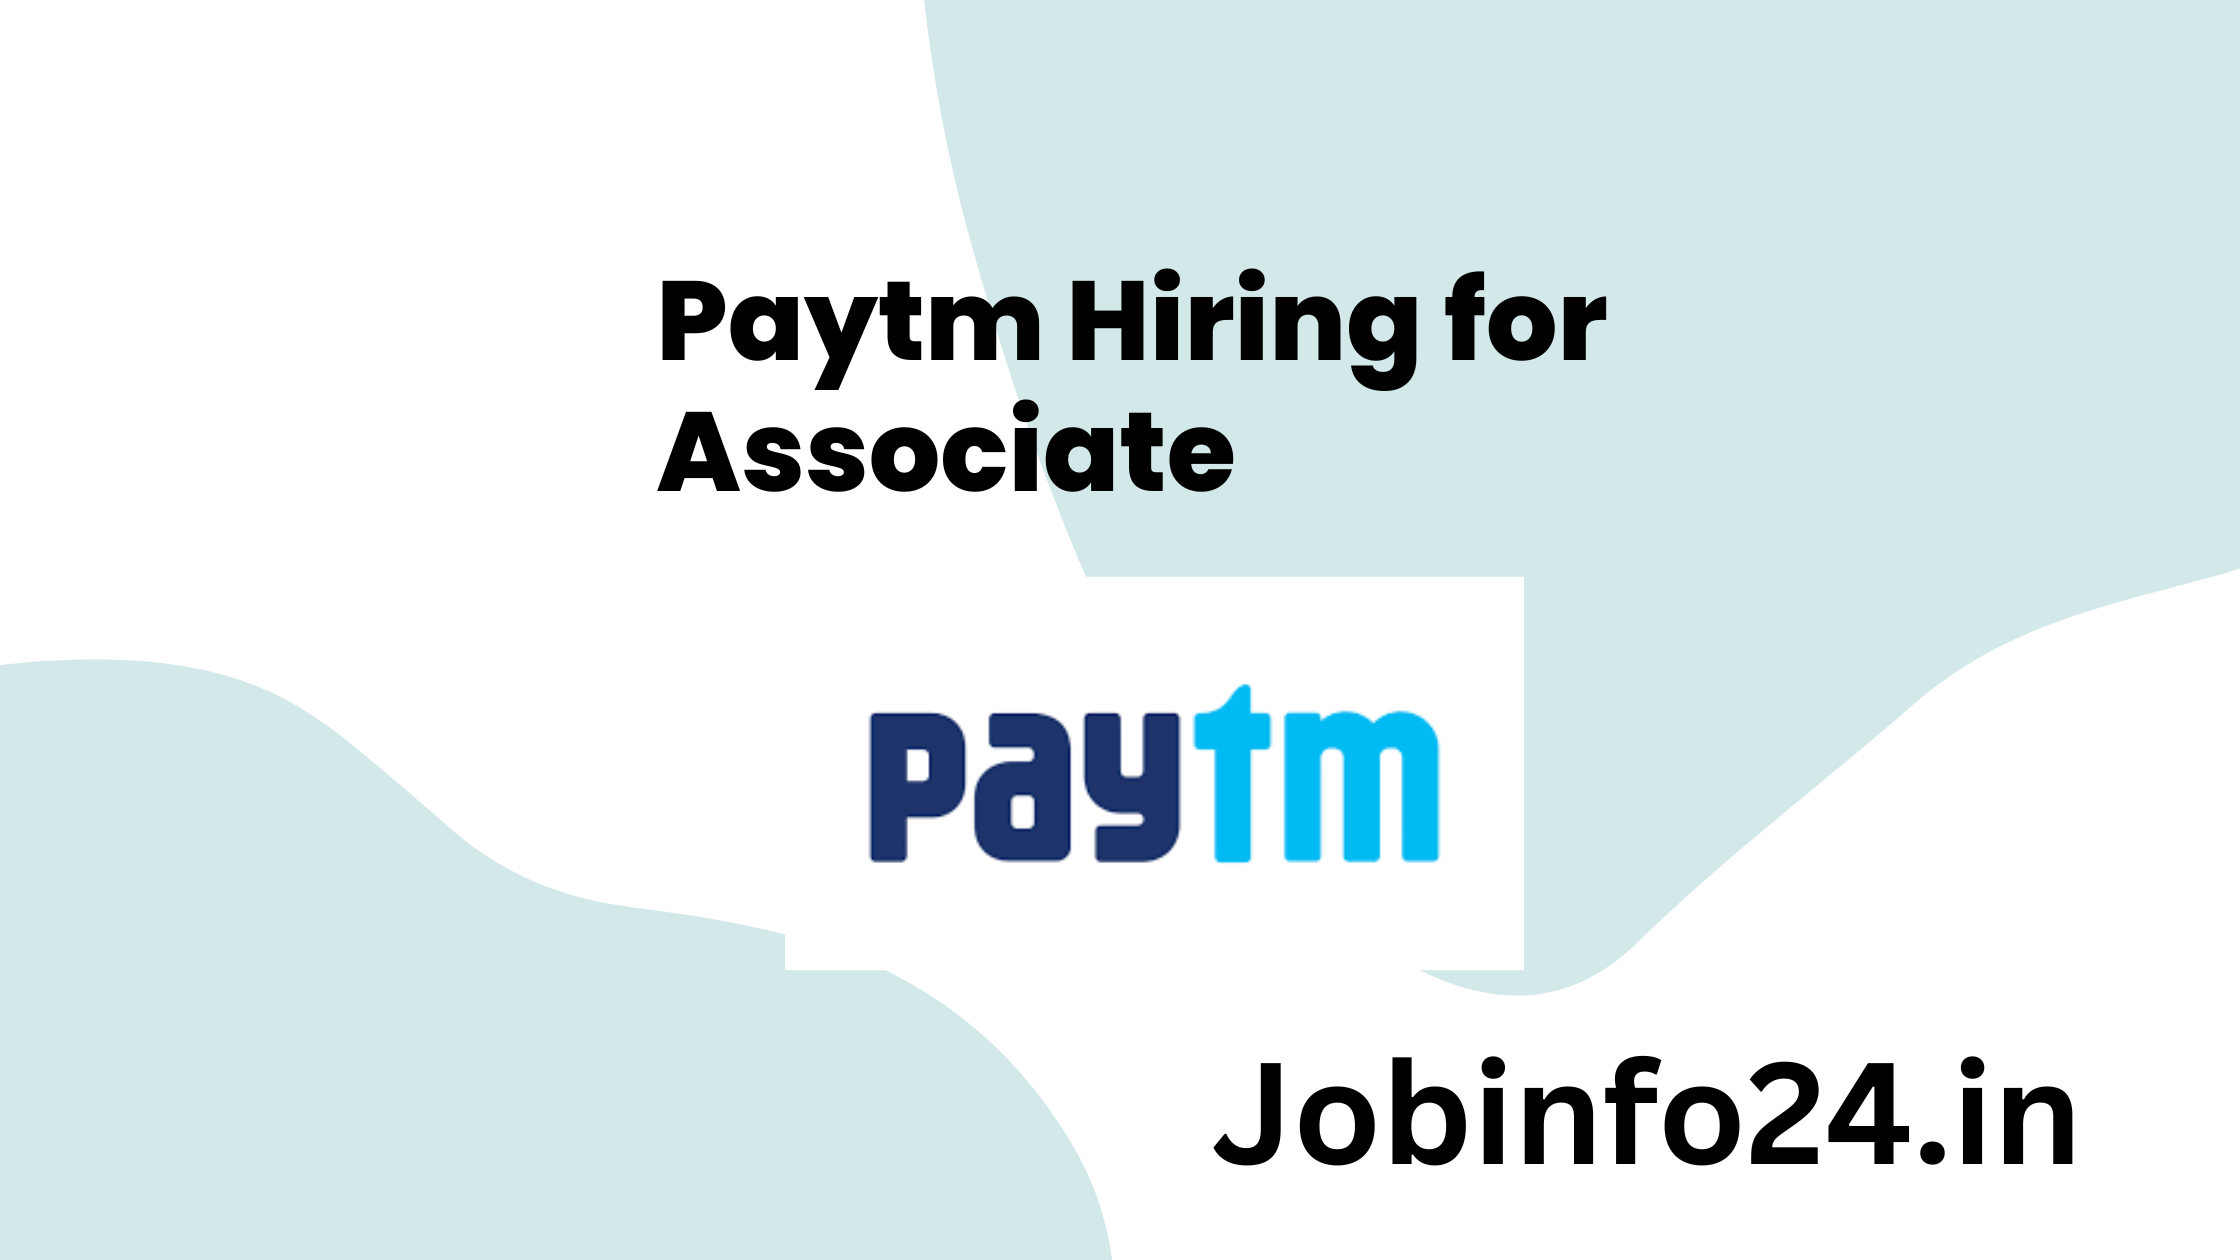 Paytm Hiring for Associate